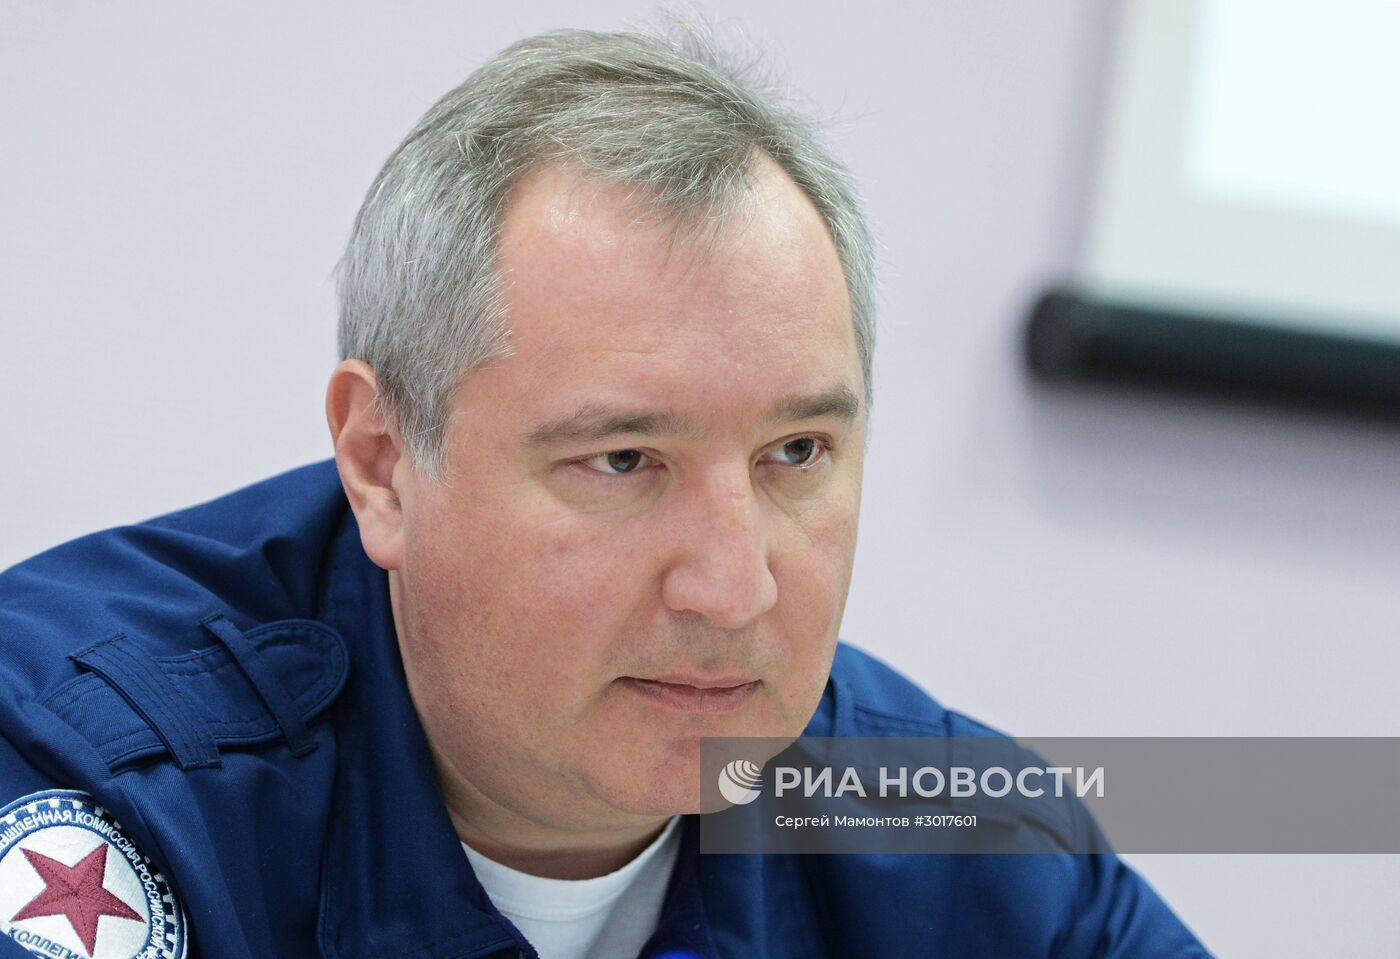 Вице-премьер РФ Дмитрий Рогозин посетил ВМЗ и ВАСО в Воронеже